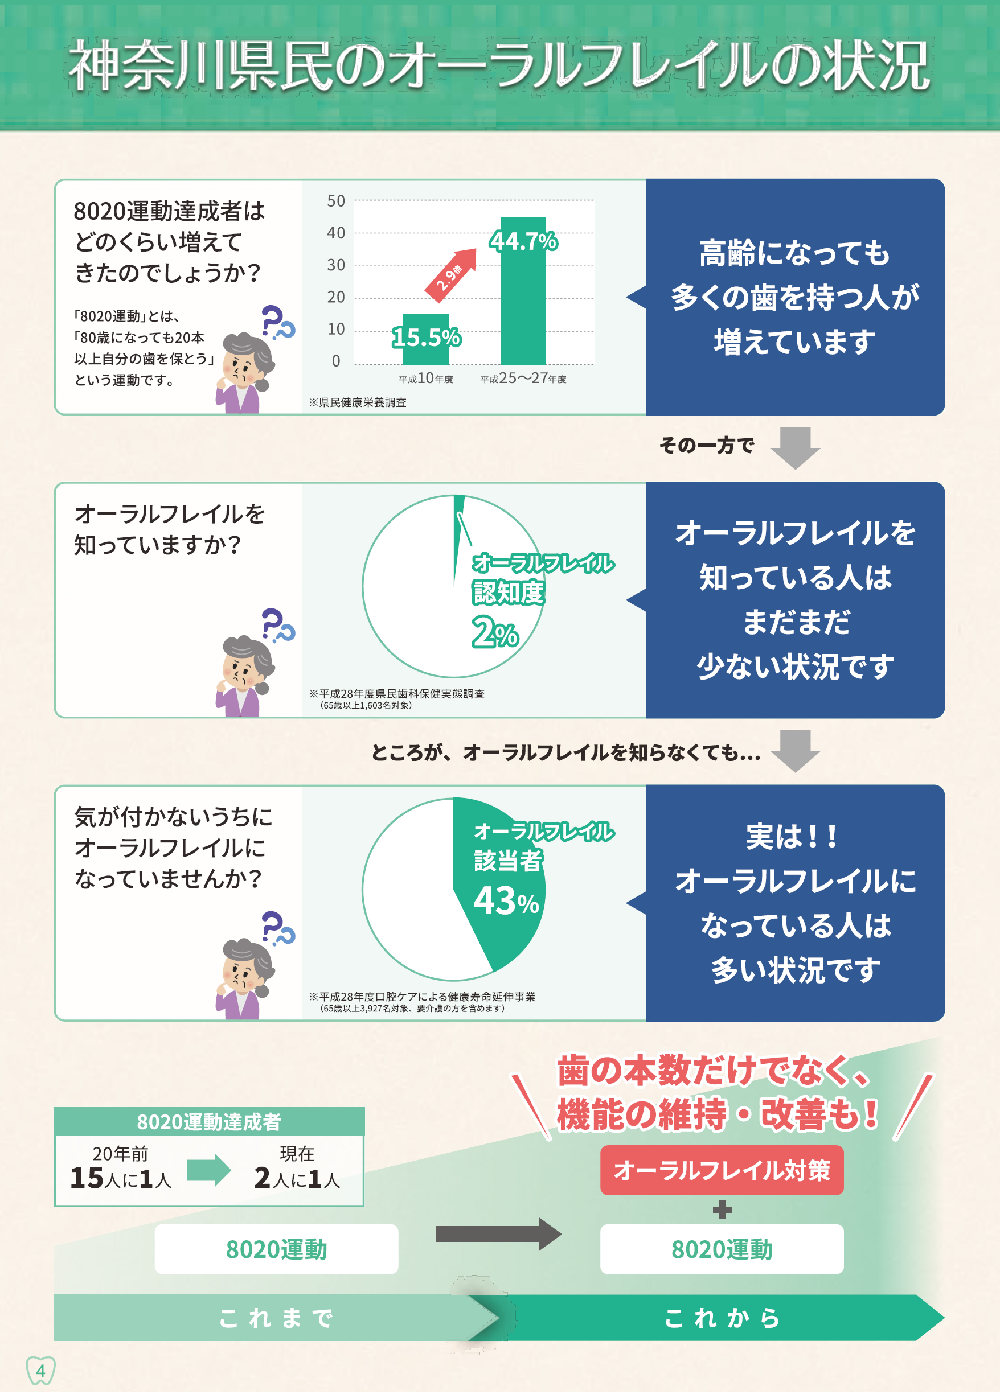 神奈川県民のオーラルフレイルの状況を表したイラストや図です。